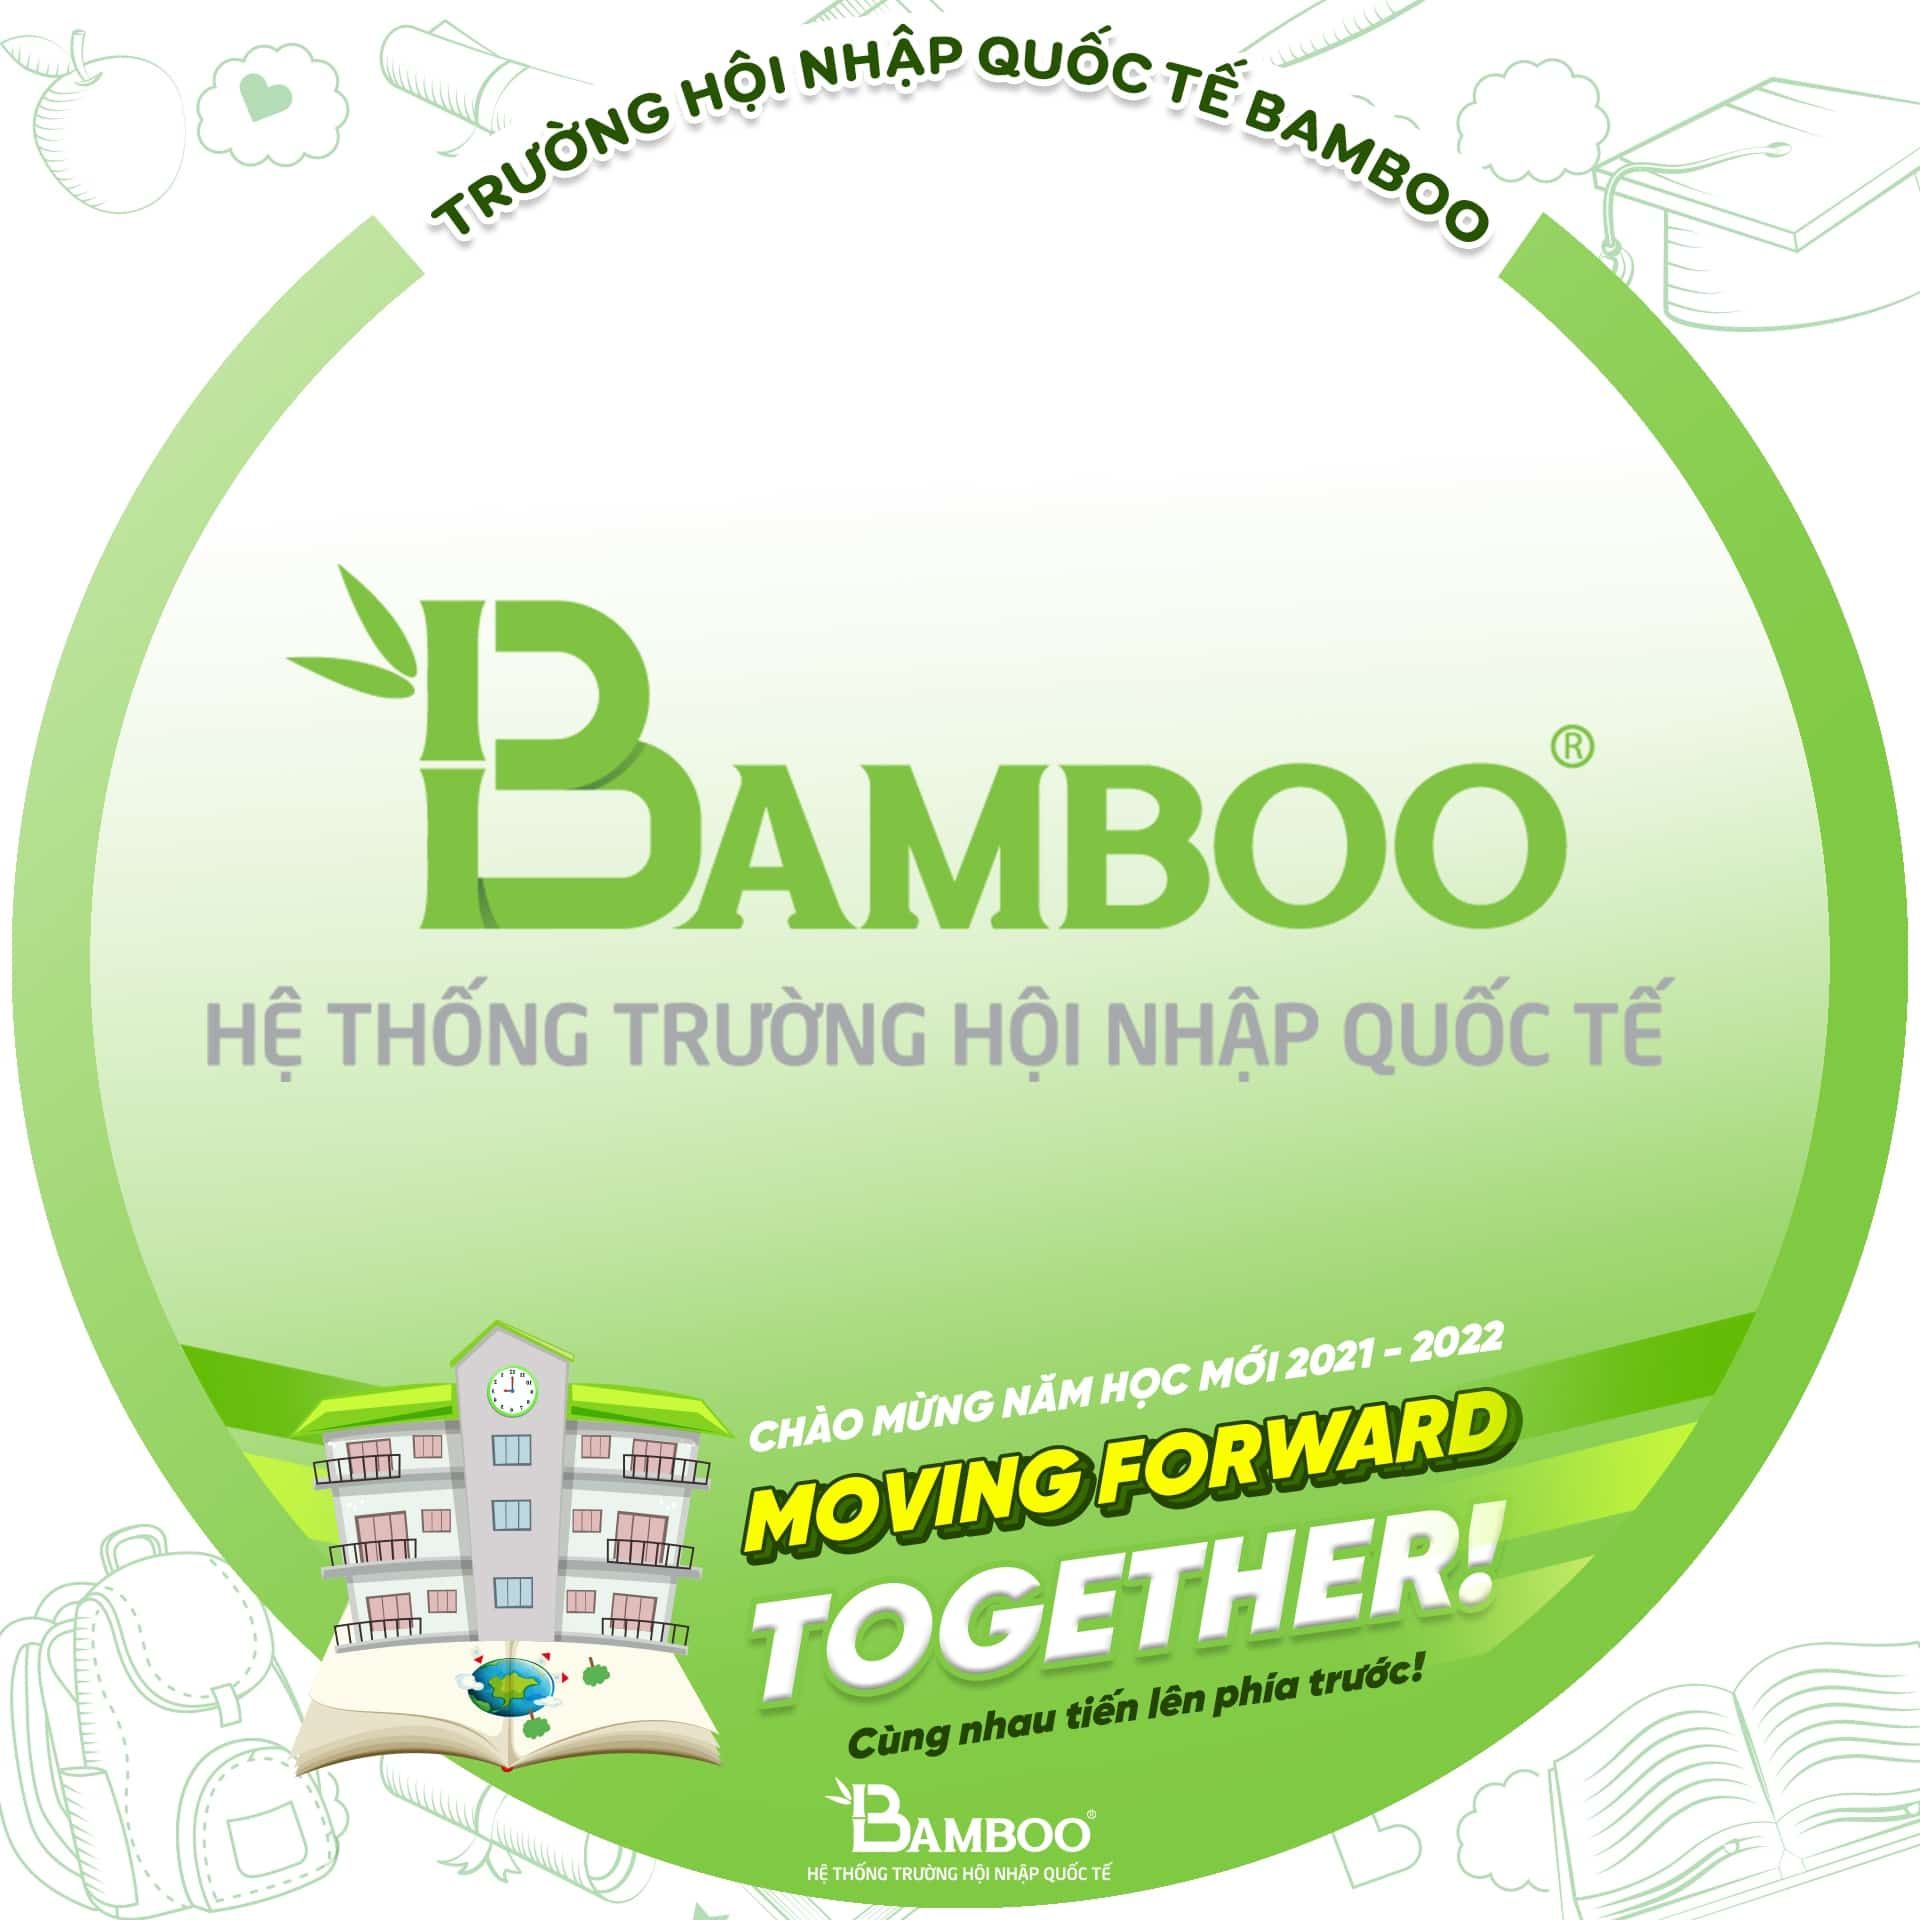 Bamboo School - Biến khó khăn thành động lực